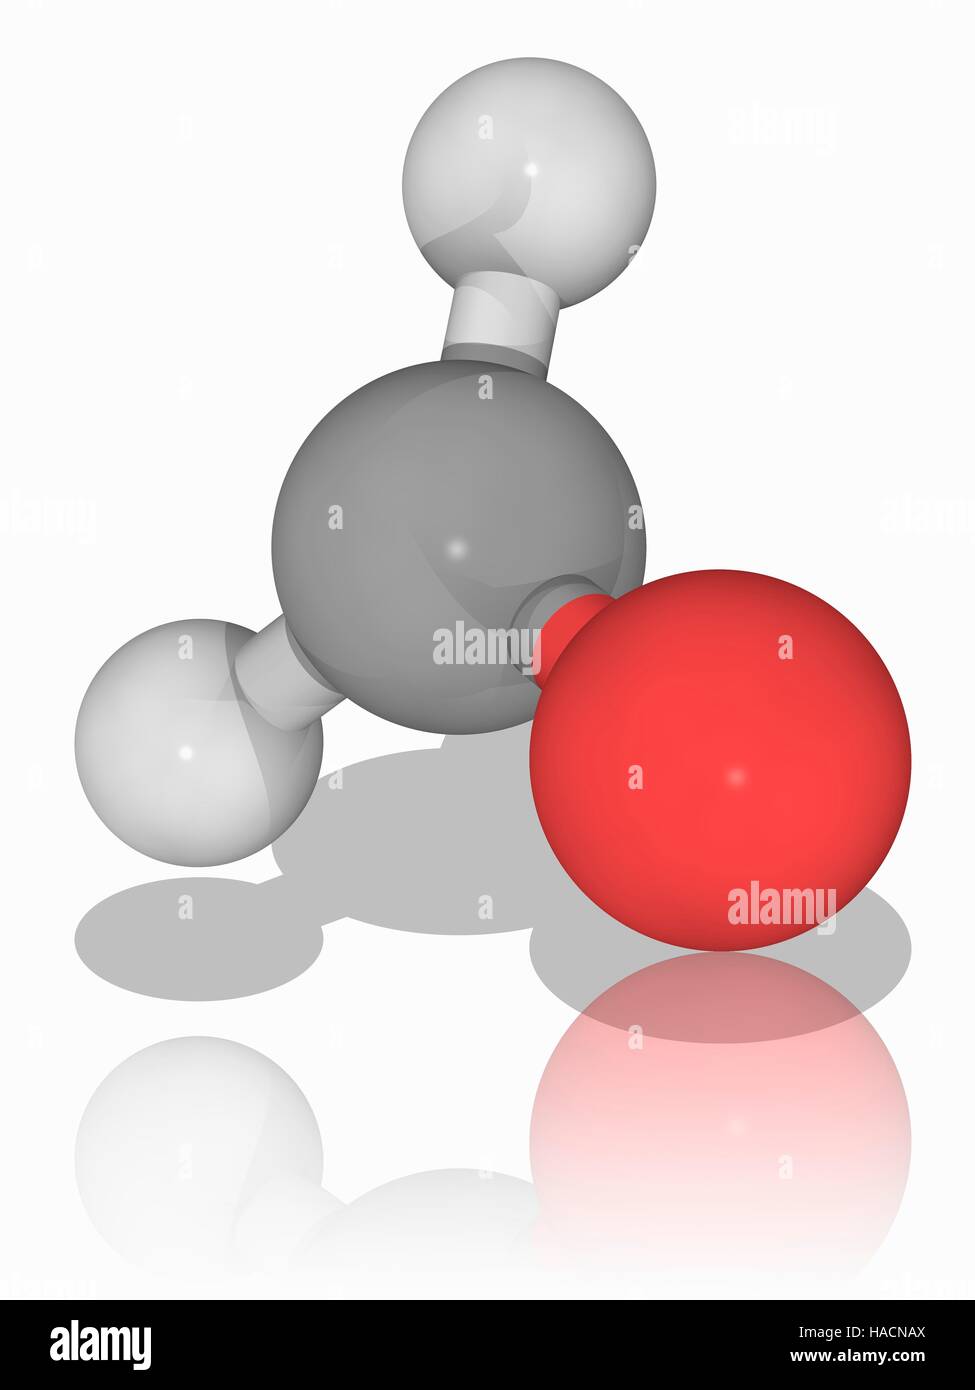 Formaldeide. Il modello molecolare del composto organico formaldeide (C.H2.O), noto anche come methanal. Questo è il più semplice aldeide. Esso è un liquido incolore gas tossici con un odore pungente. Formaldeide disciolto in acqua (formalina) è stato utilizzato per la conservazione di campioni biologici. Gli atomi sono rappresentati da sfere e sono codificati a colori: carbonio (grigio), Idrogeno (bianco) e ossigeno (rosso). Illustrazione. Foto Stock